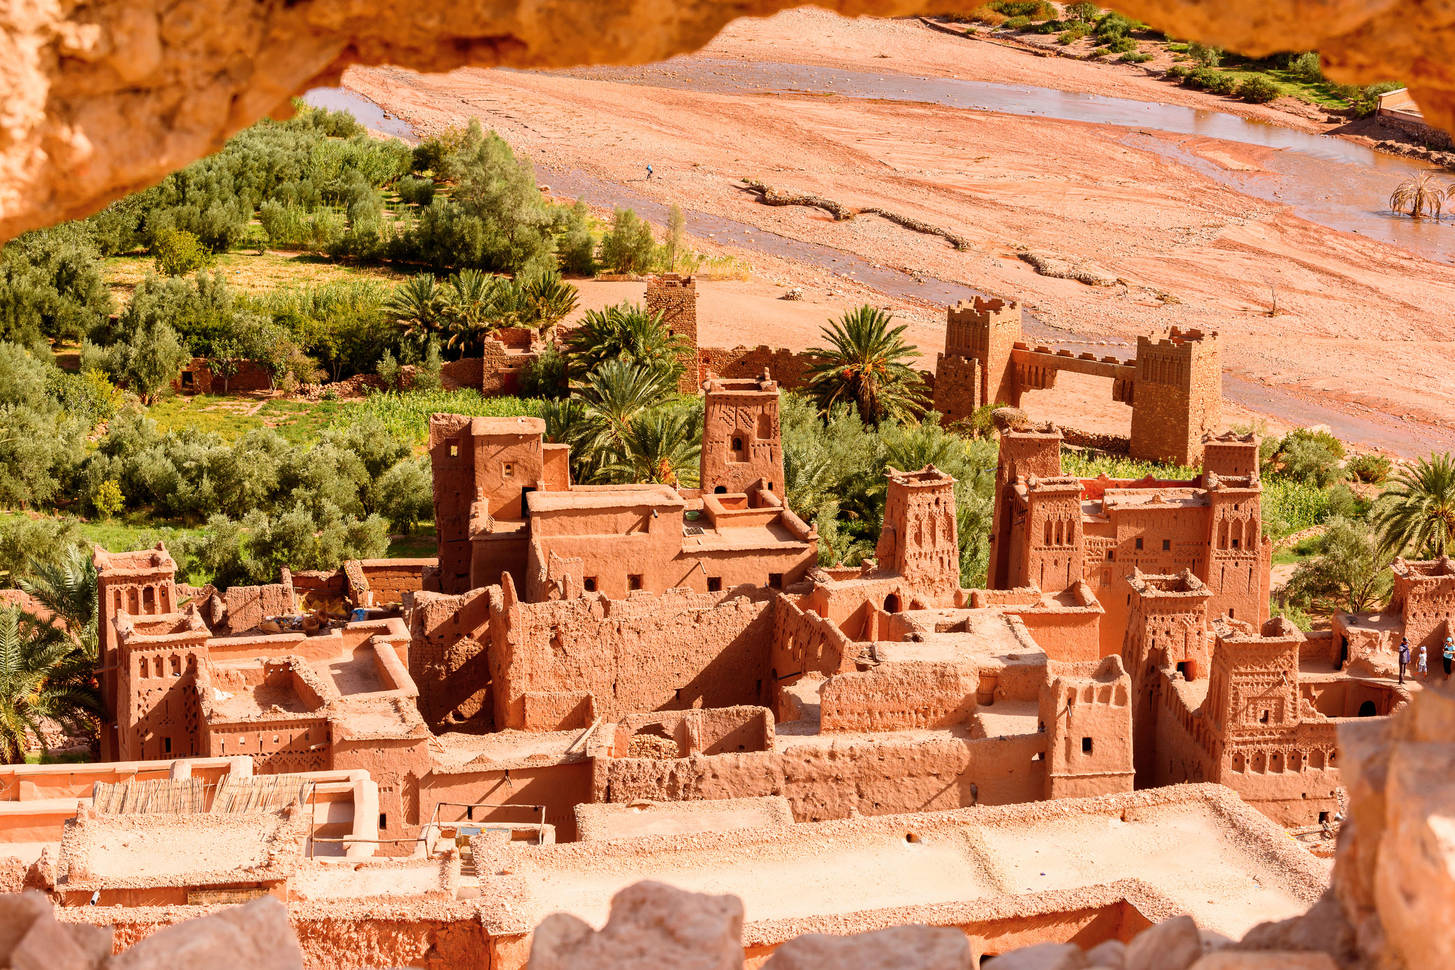 Full Day Tour To Ait Ben-Haddou & Ouarzazate